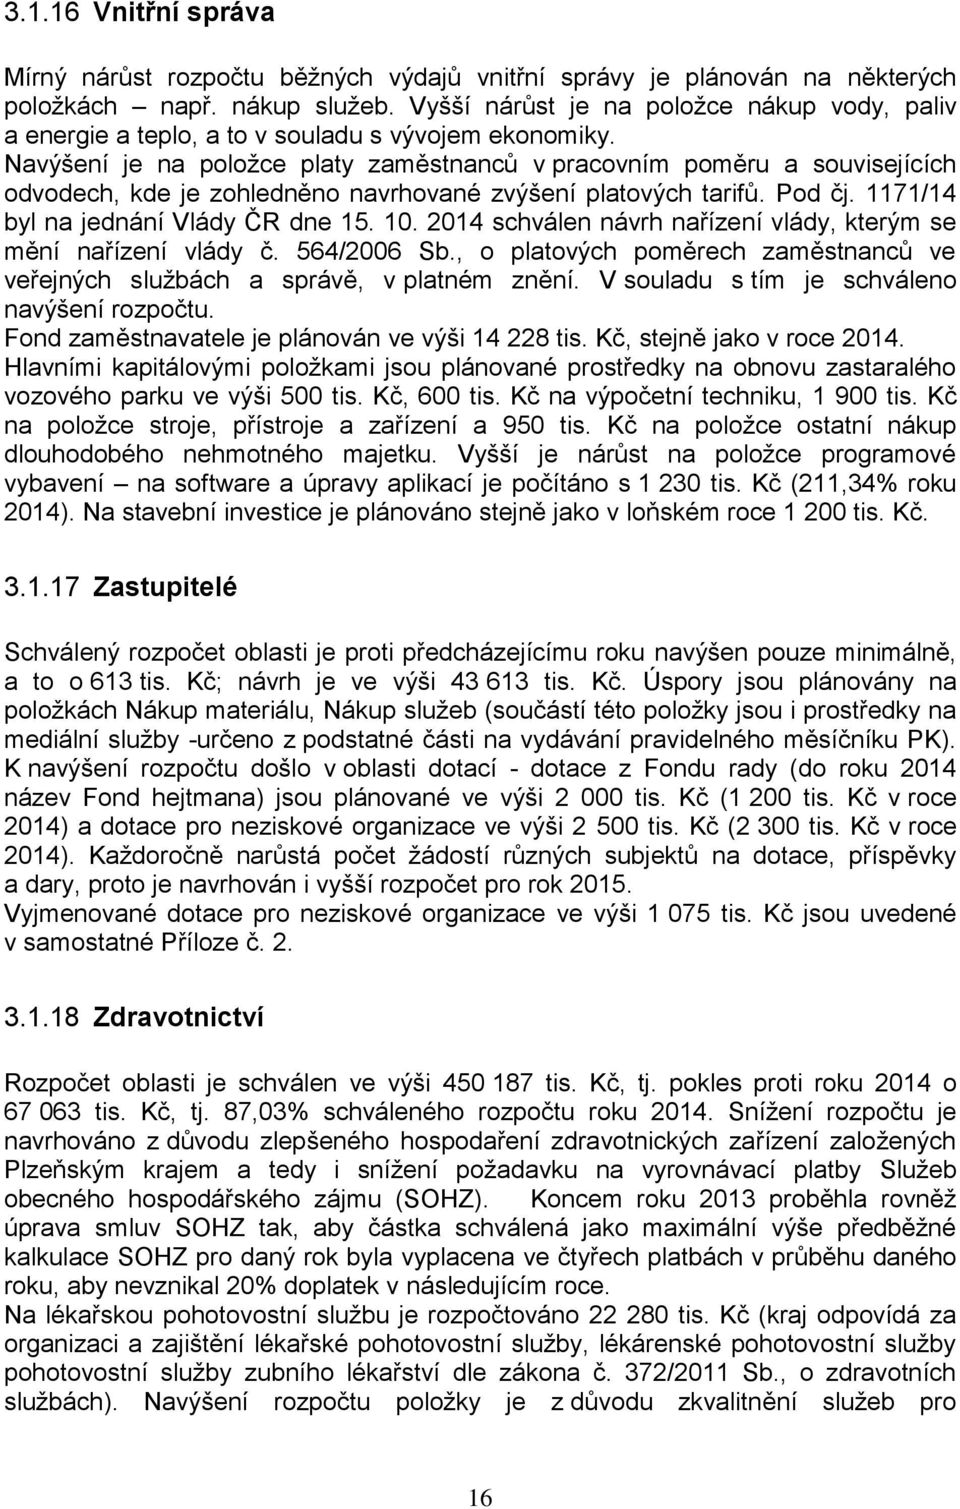 Navýšení je na položce platy zaměstnanců v pracovním poměru a souvisejících odvodech, kde je zohledněno navrhované zvýšení platových tarifů. Pod čj. 1171/14 byl na jednání Vlády ČR dne 15. 10.